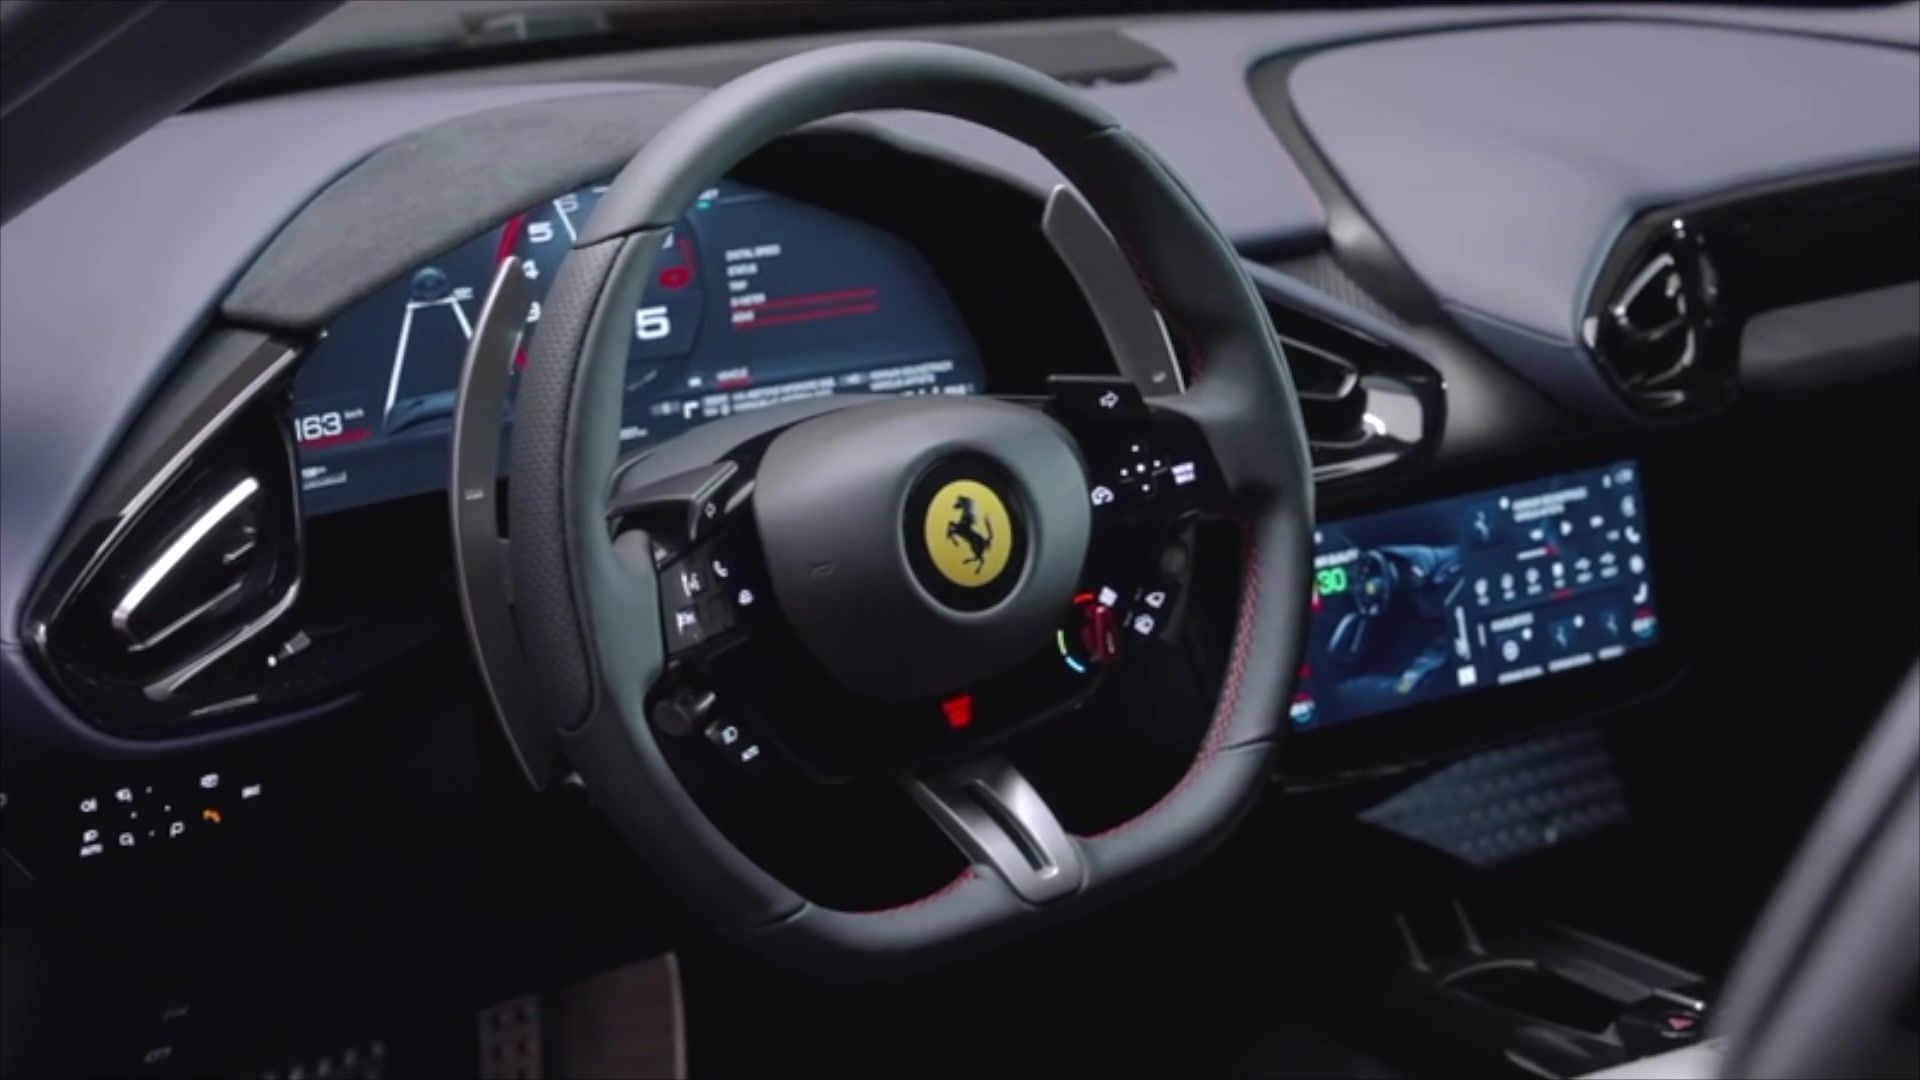 The Ferrari 12Cilindri Cockpit